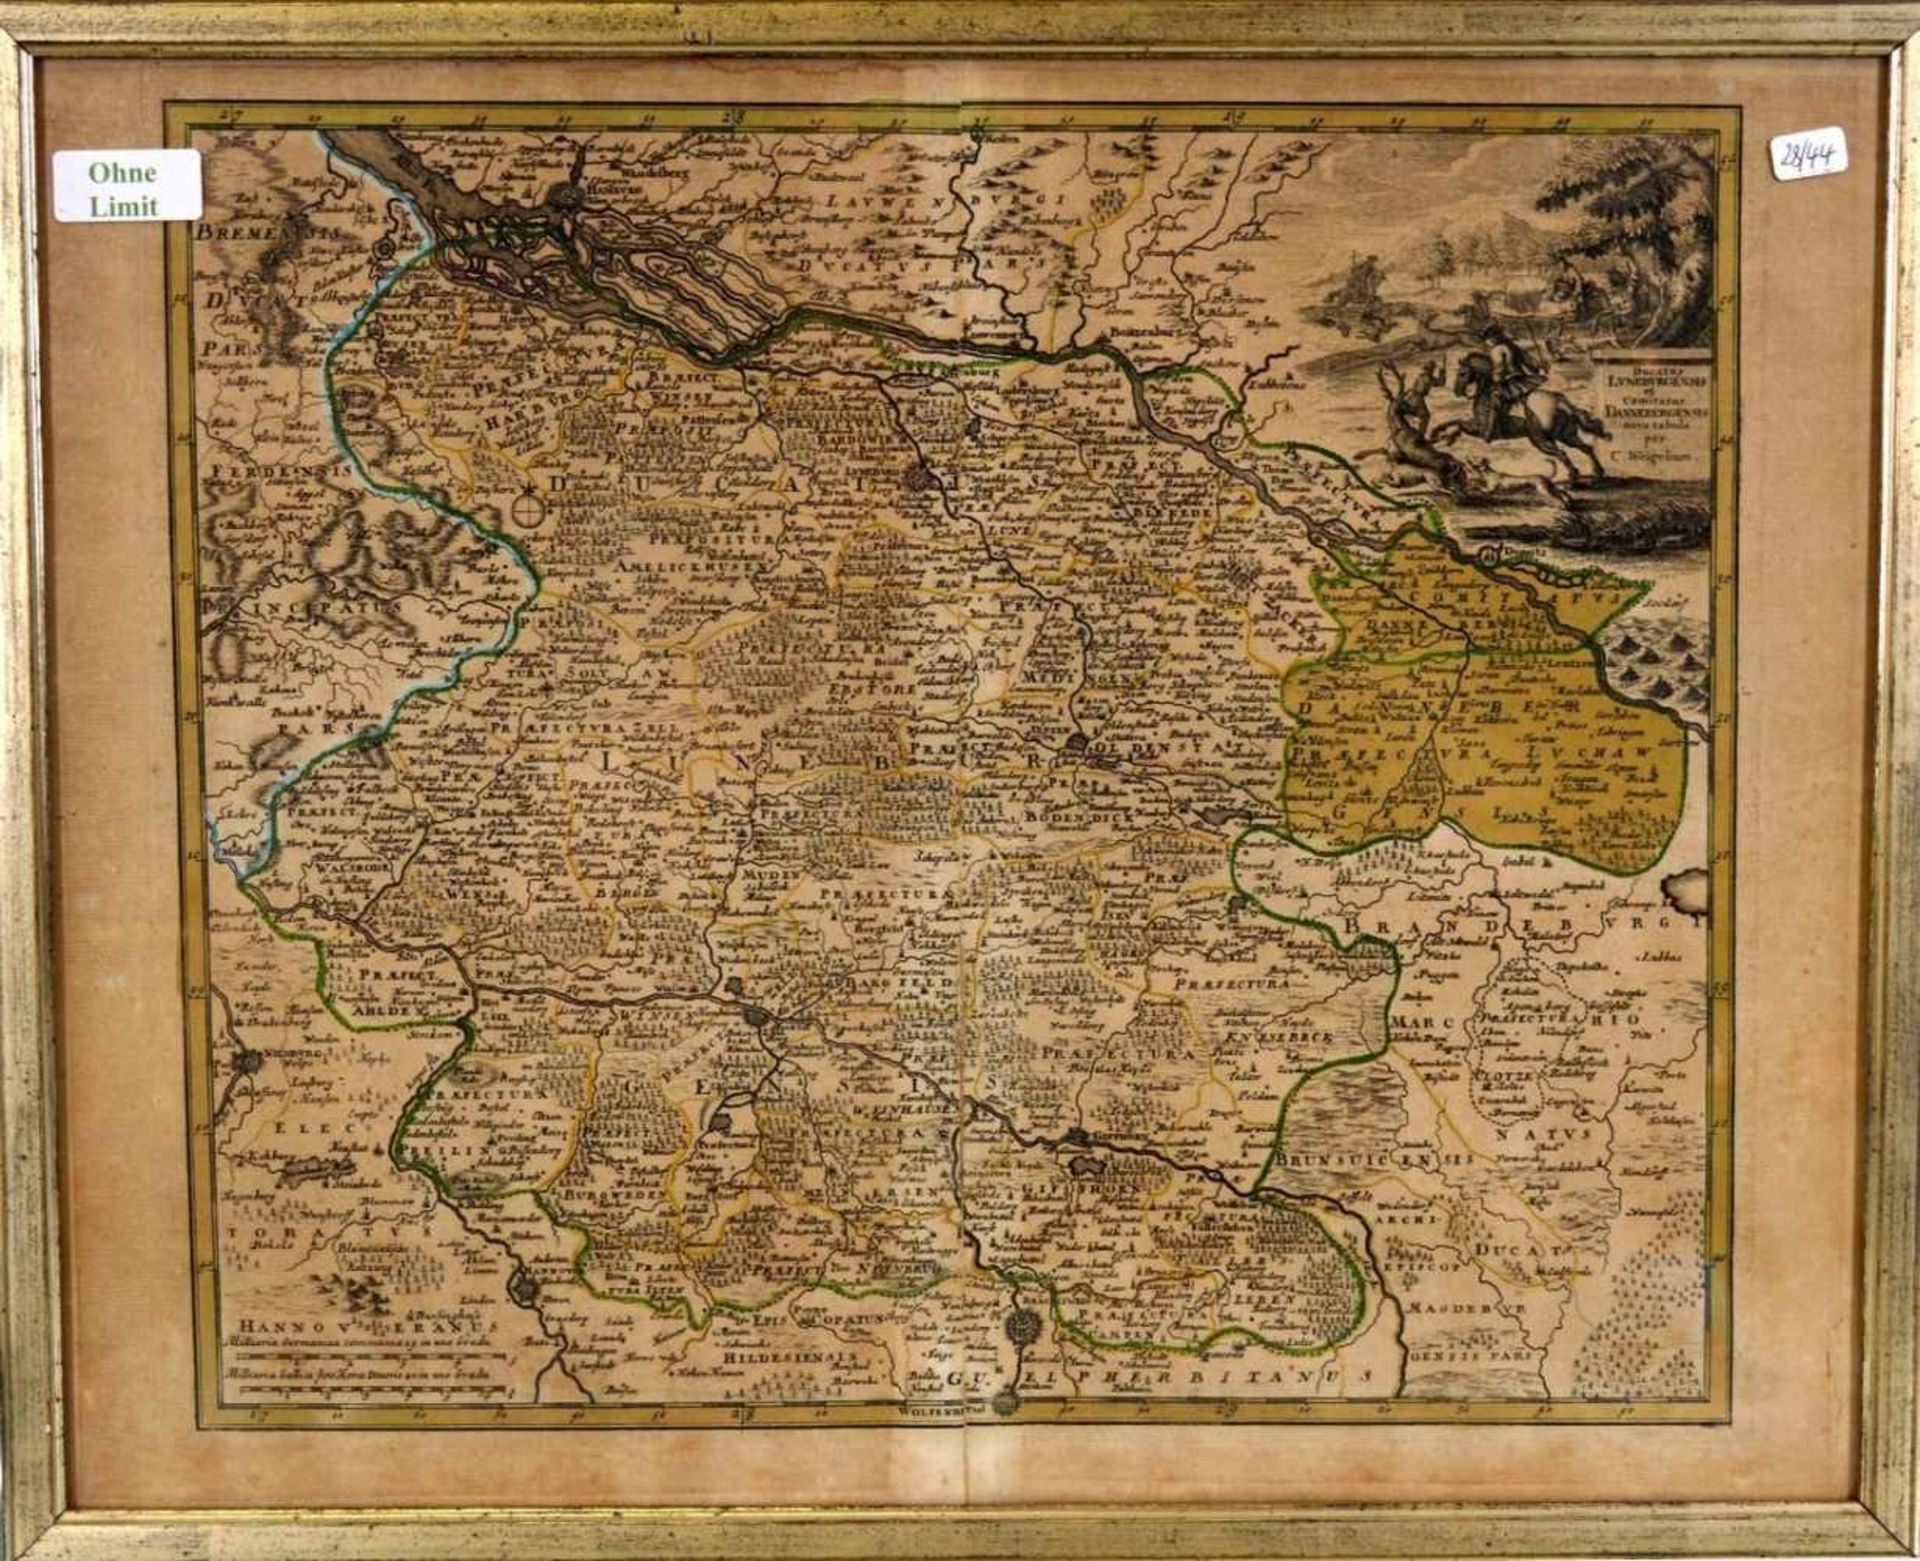 Landkarte Norddeutschland, coloriert, 32 X 38 cm, im Rahmen, 18. Jh.